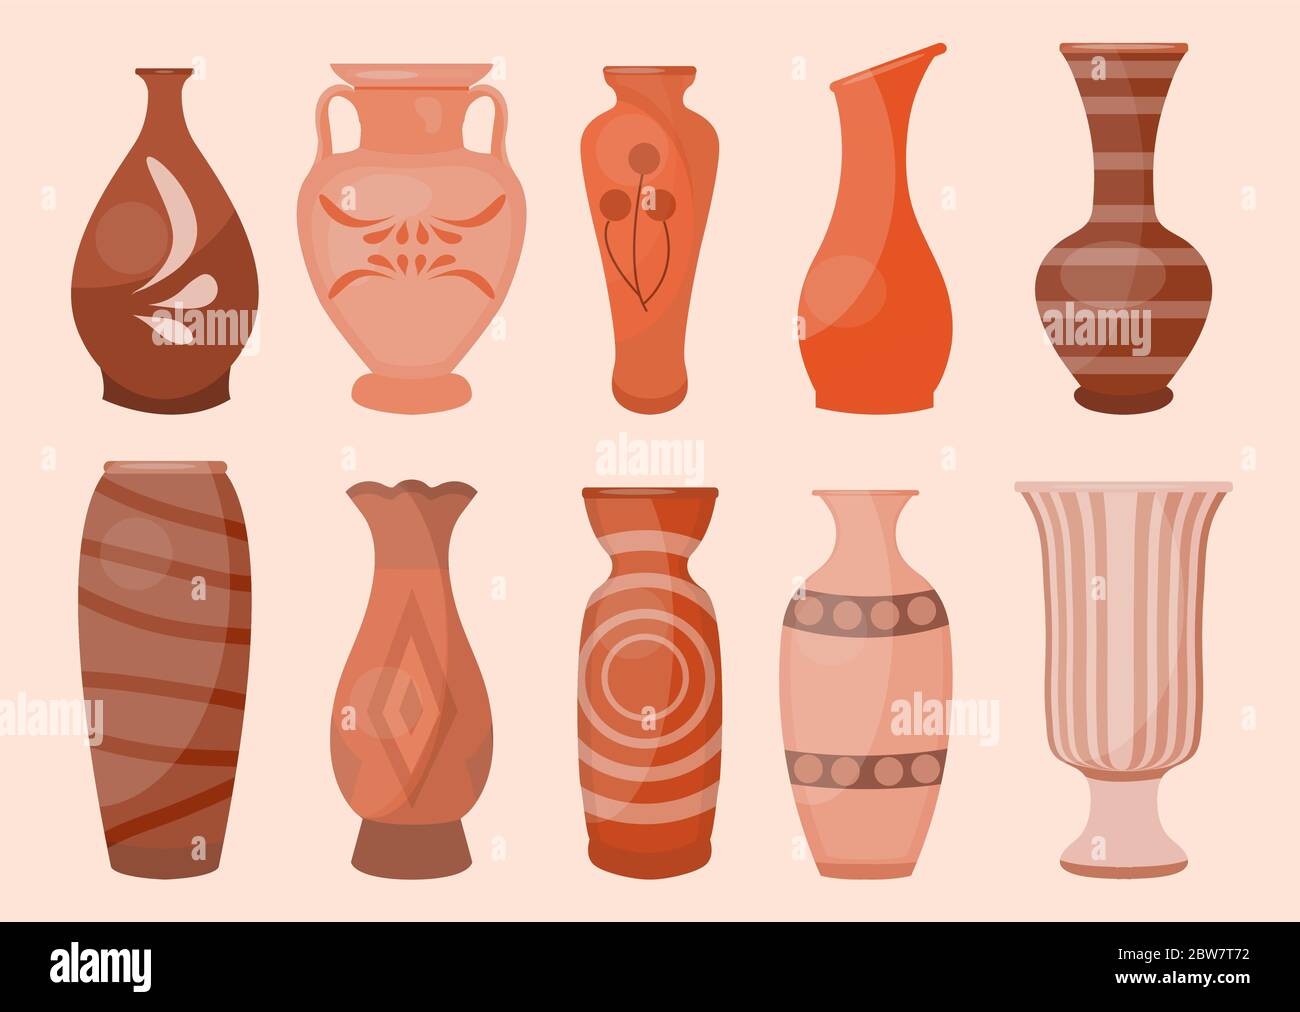 Keramik Vasen Set, modern flach. Antike Keramik klassische Topf und Schüssel. Handgefertigte dekorierte Keramikvase und Glas. Vektorgrafik Stock Vektor